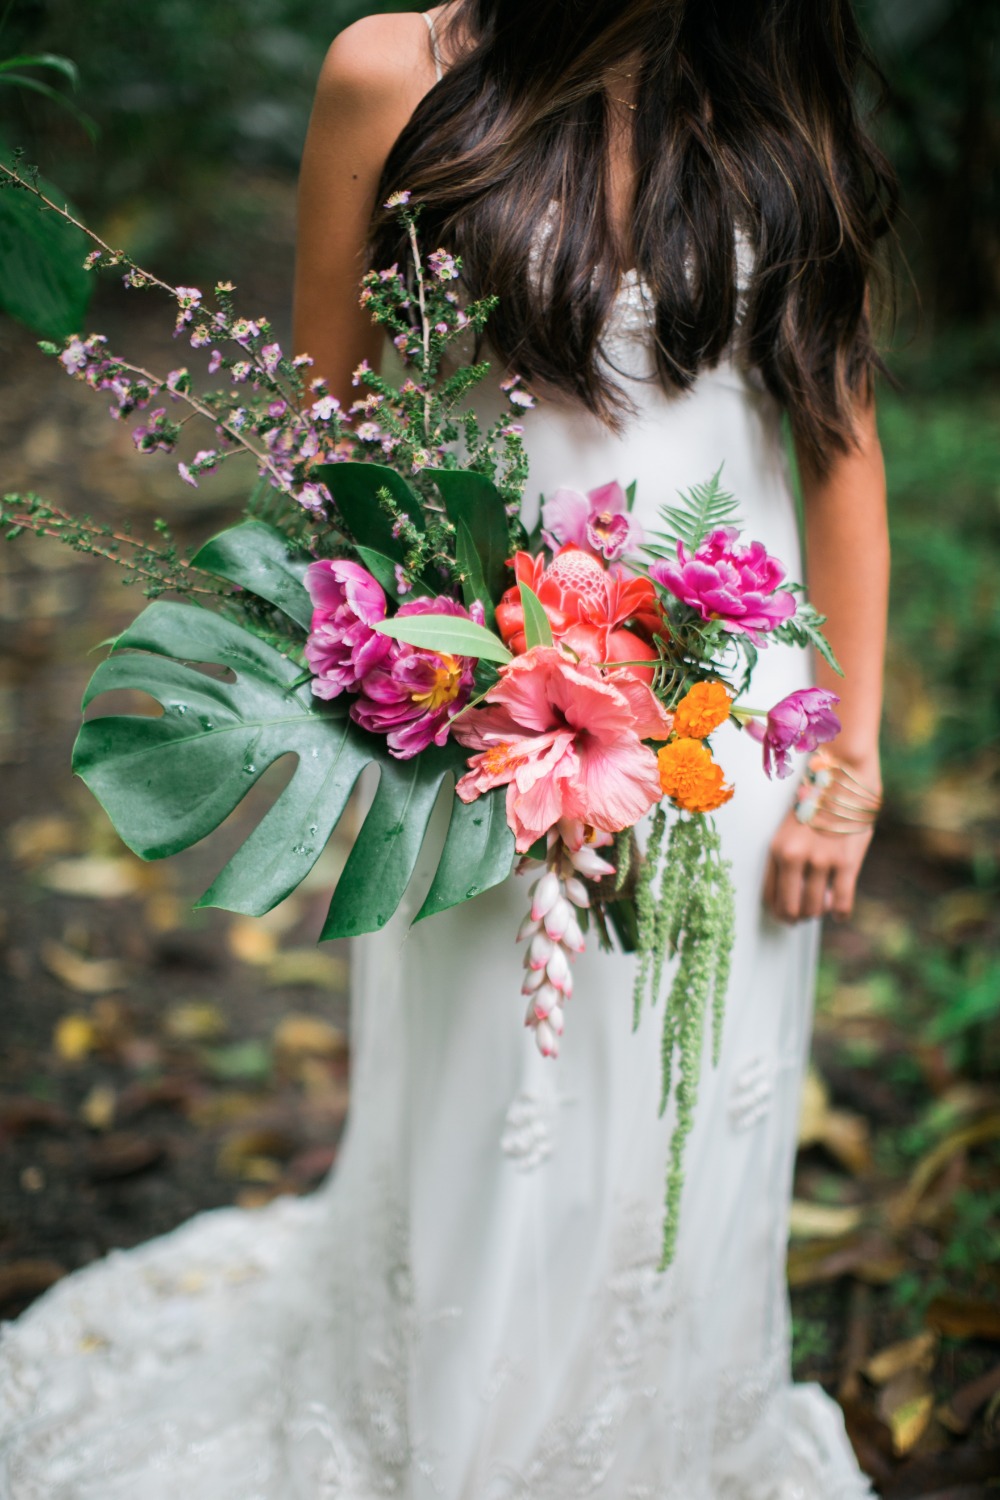 Stunning Hawaiian wedding bouquet